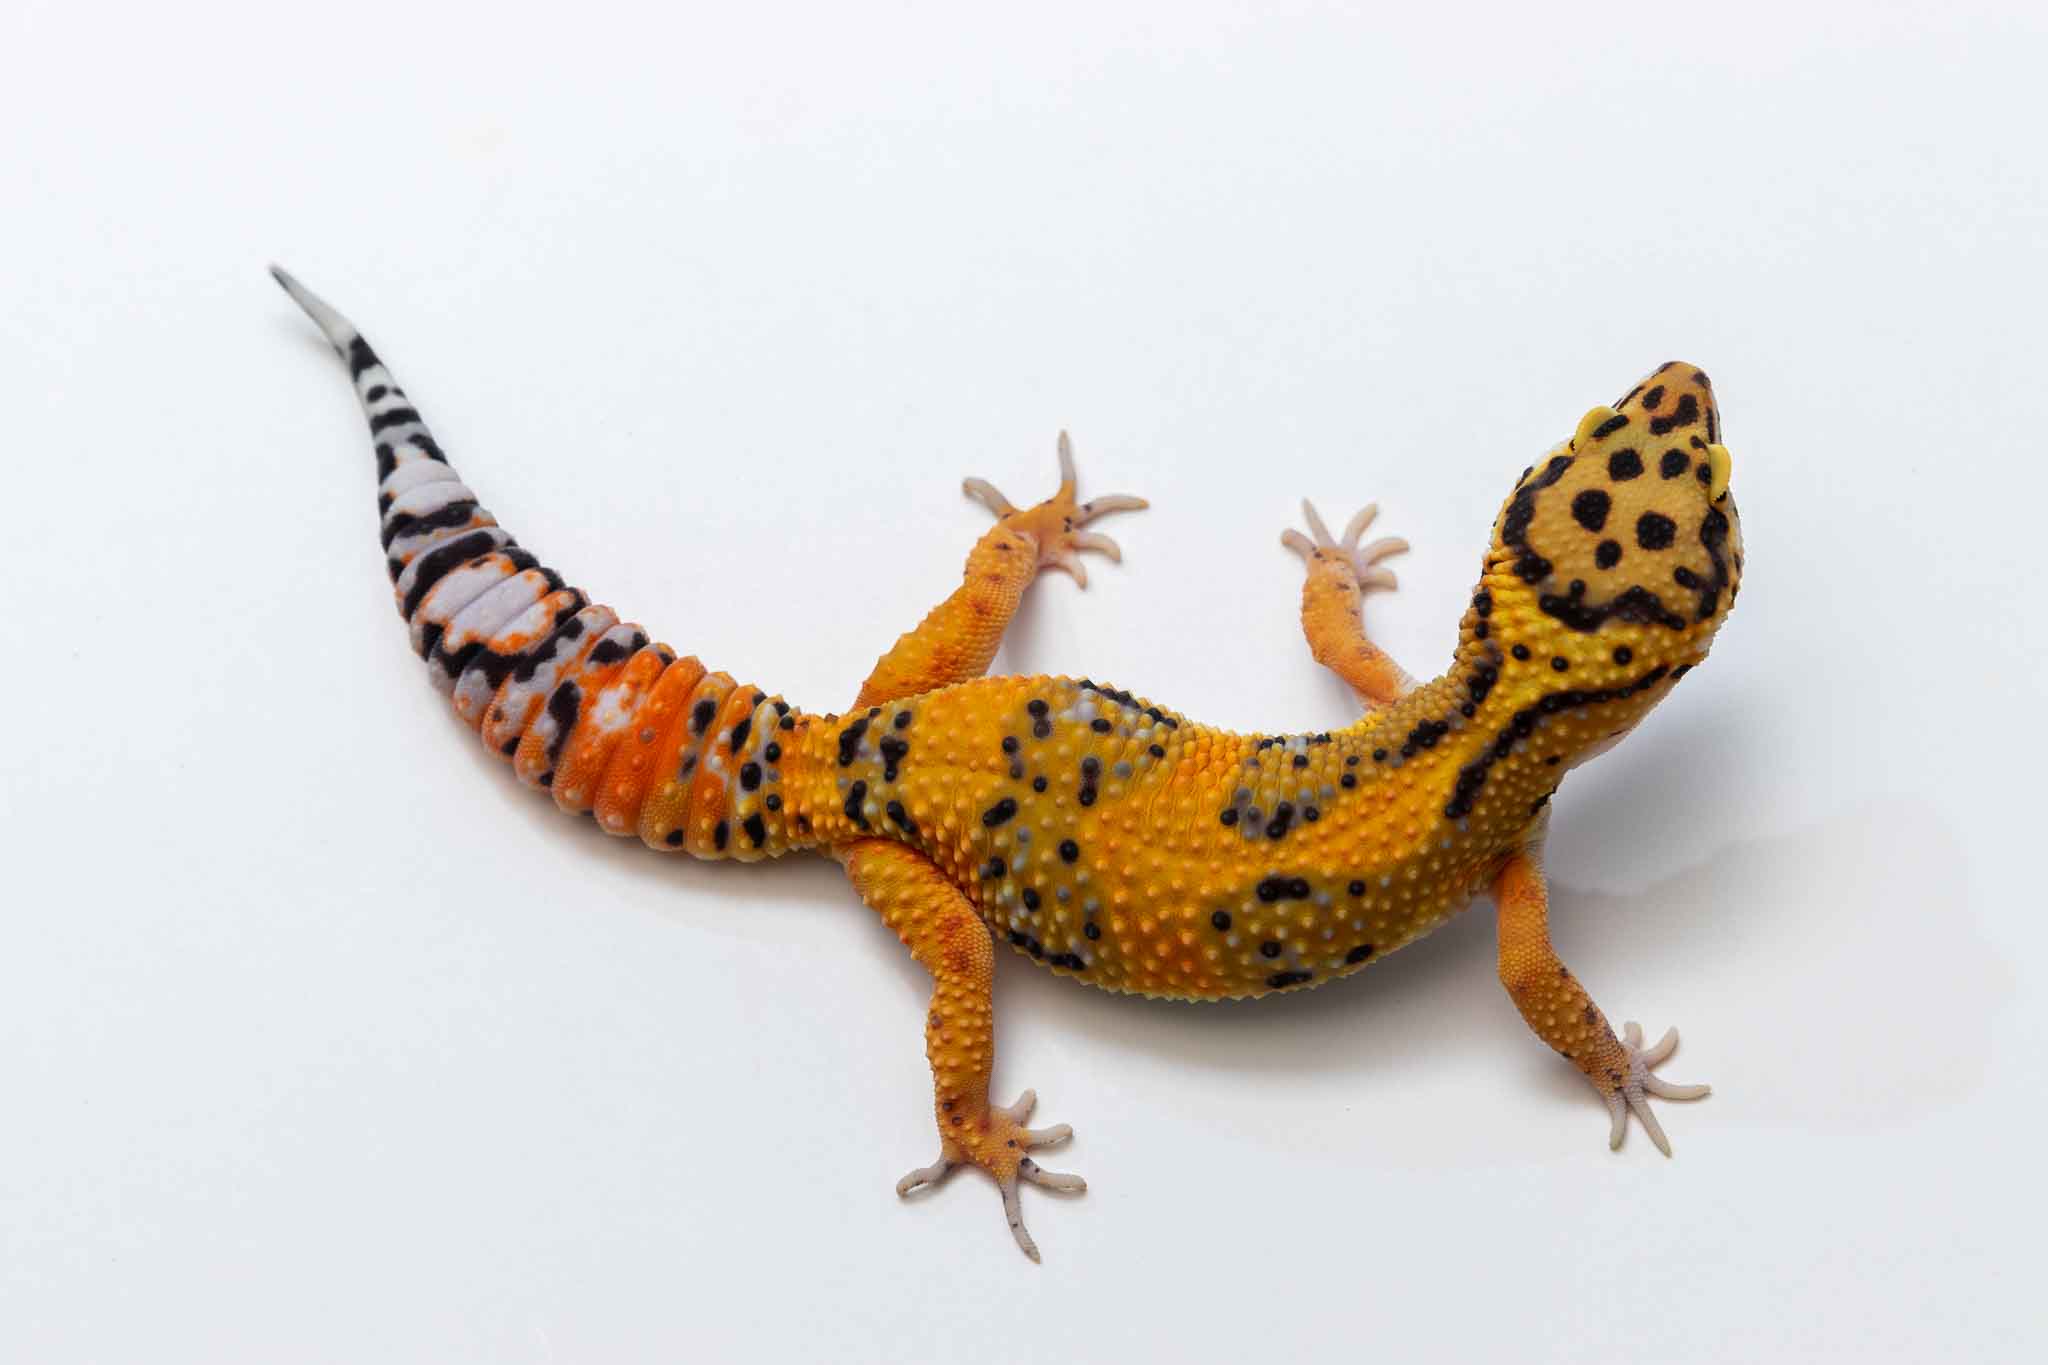 Firebold Leopard Gecko by Suburban Geckos